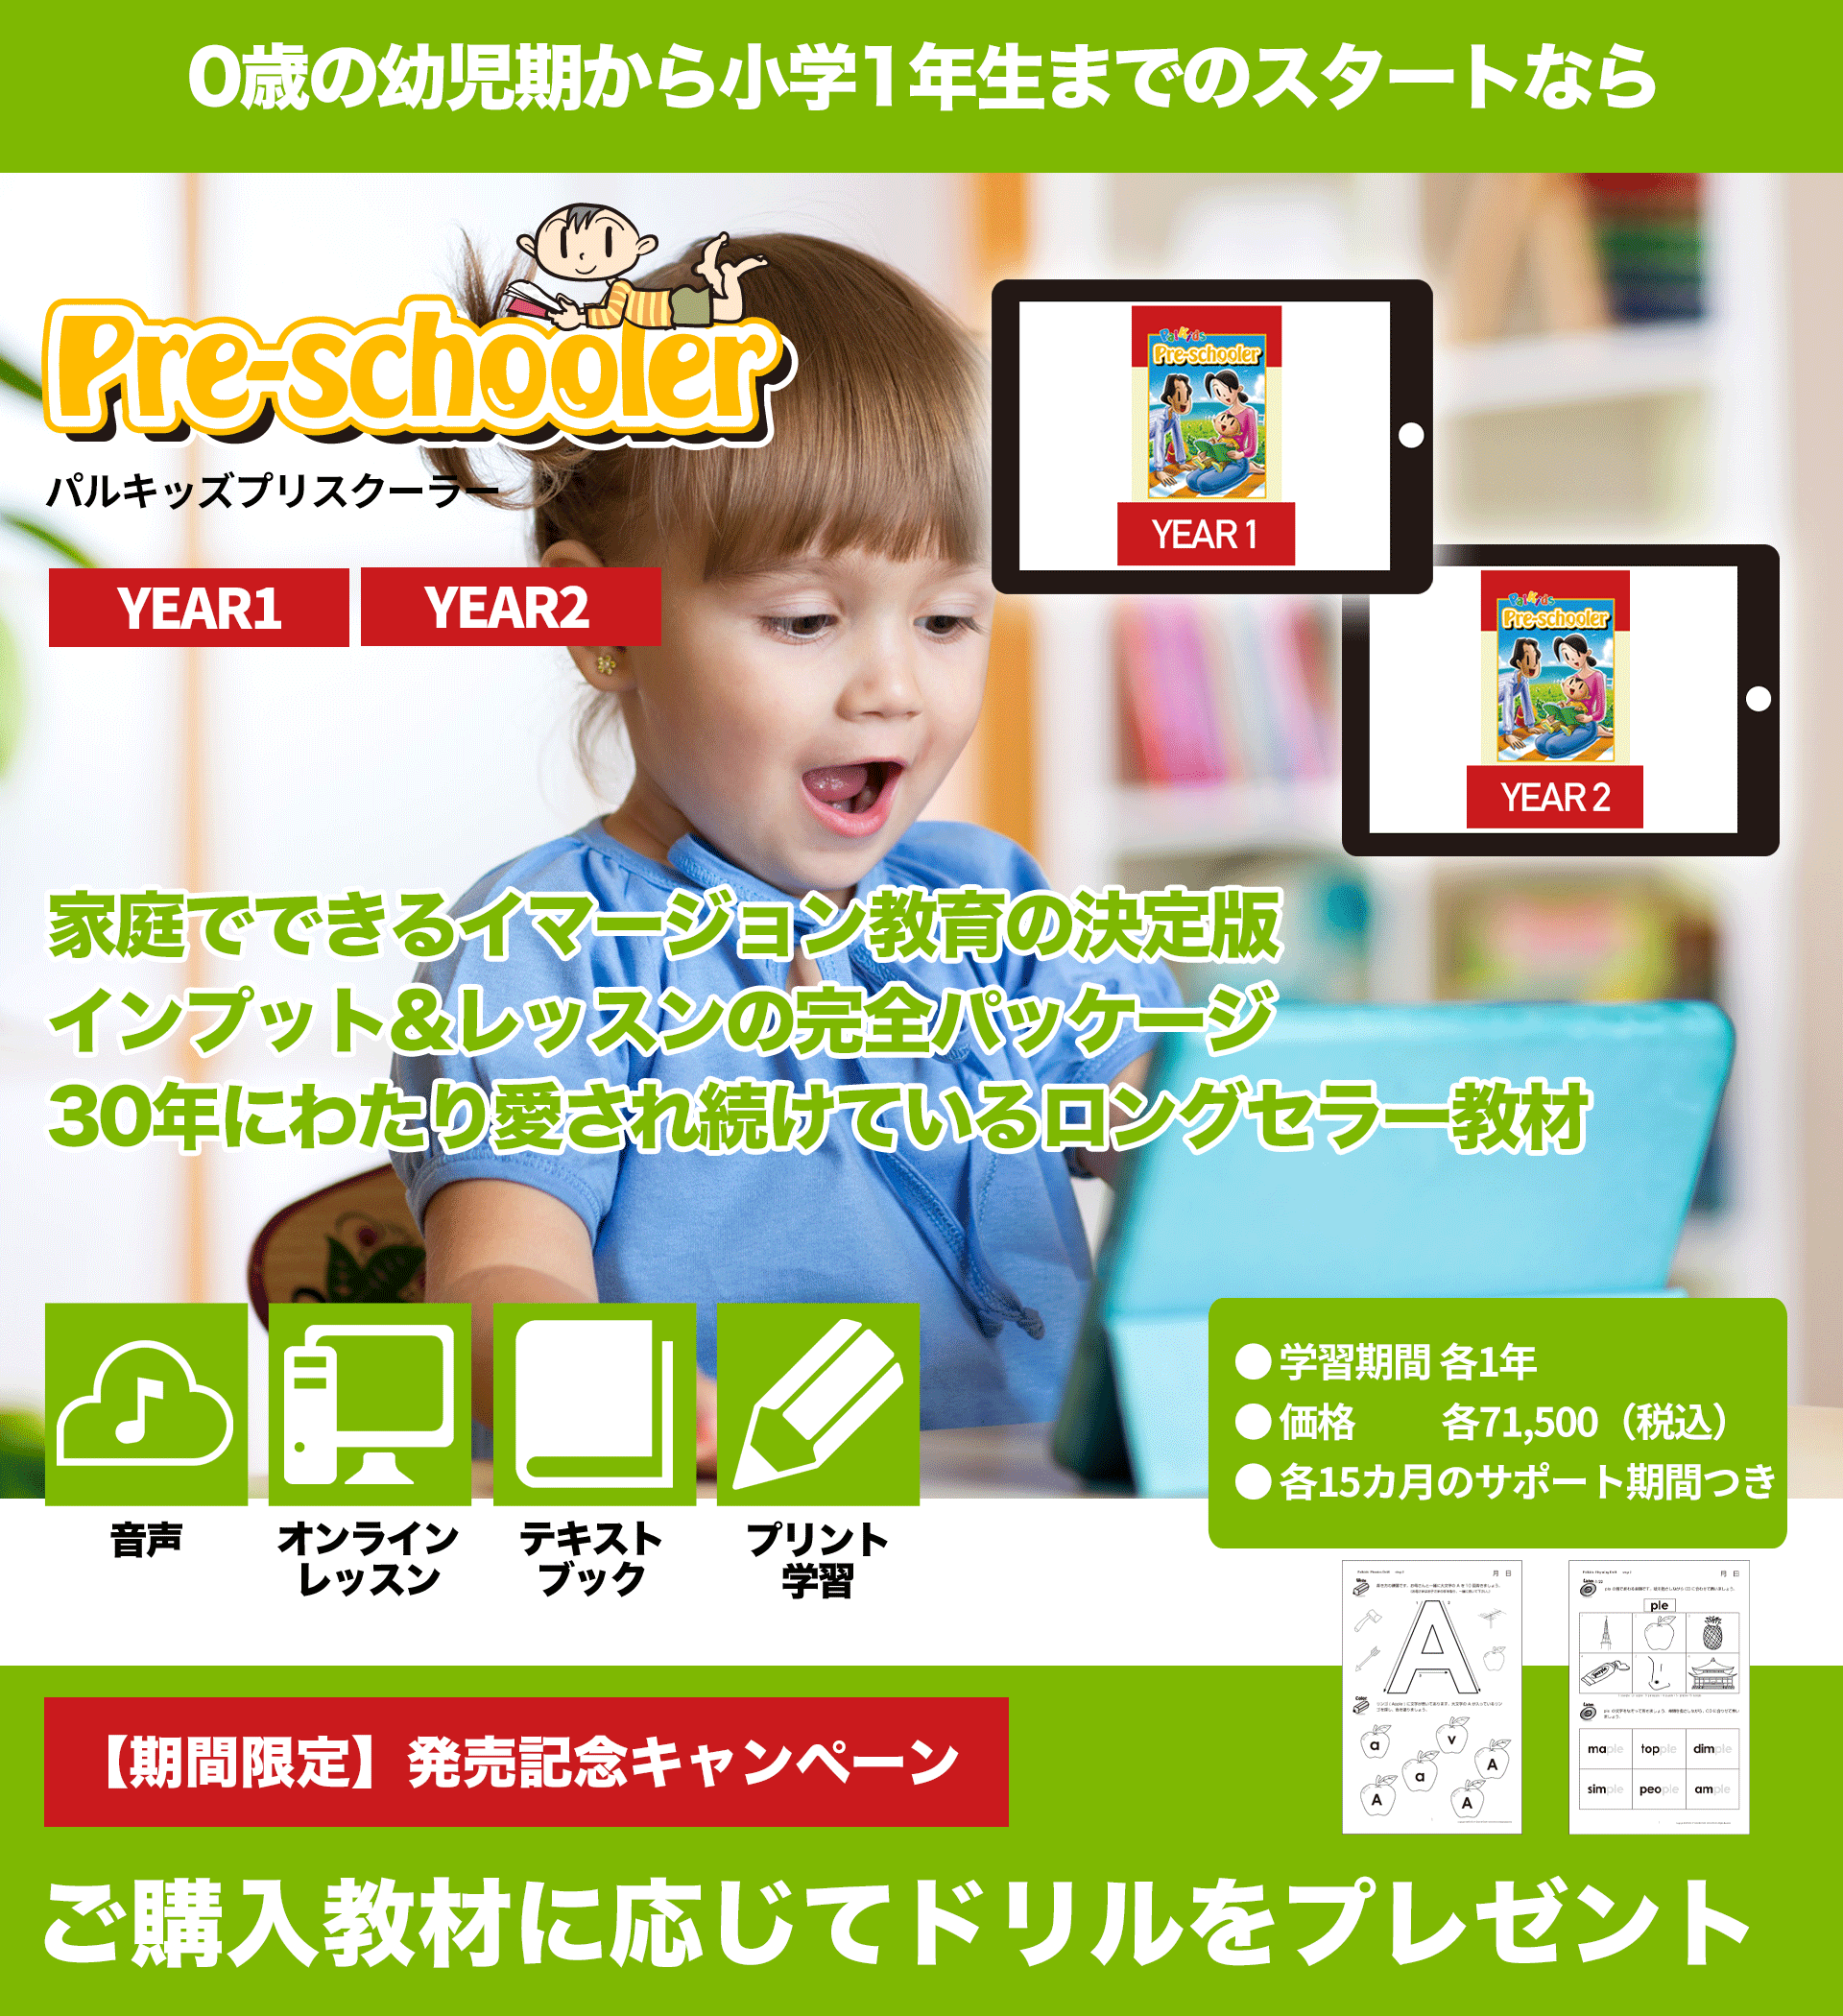 www.palkids.co.jp/img/shopping_palkids-preschooler